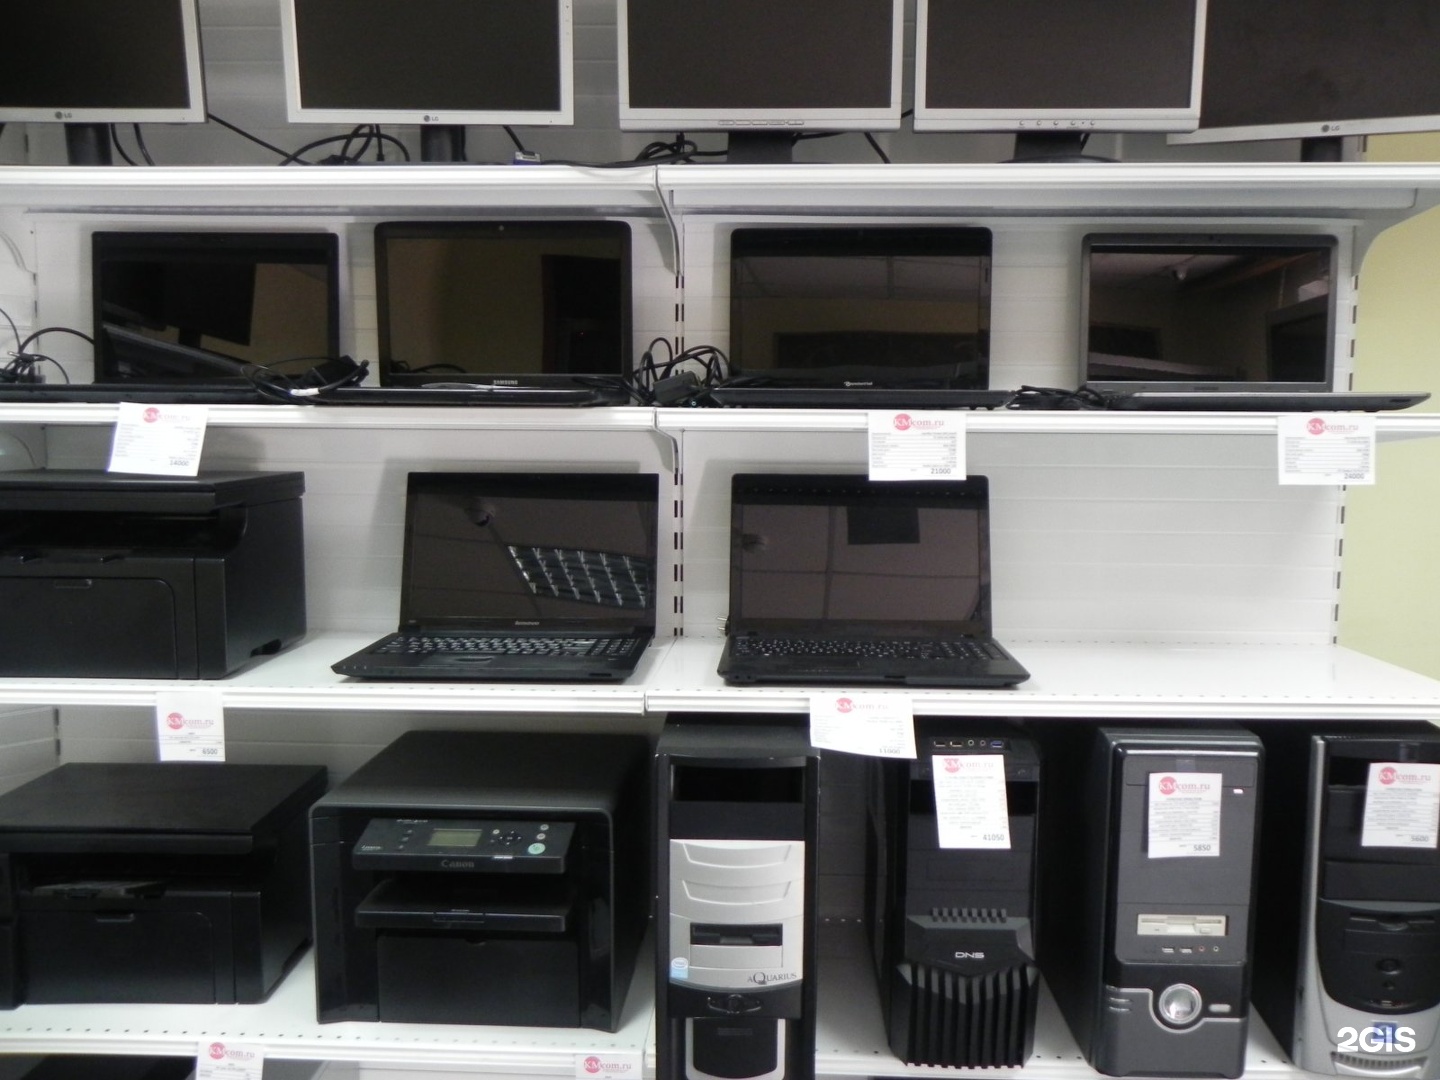 Комиссионный магазин ноутбуков. Компьютерный магазин. Магазин компьютерной техники. Комиссионный магазин компьютеры. Магазин ноутбуков.